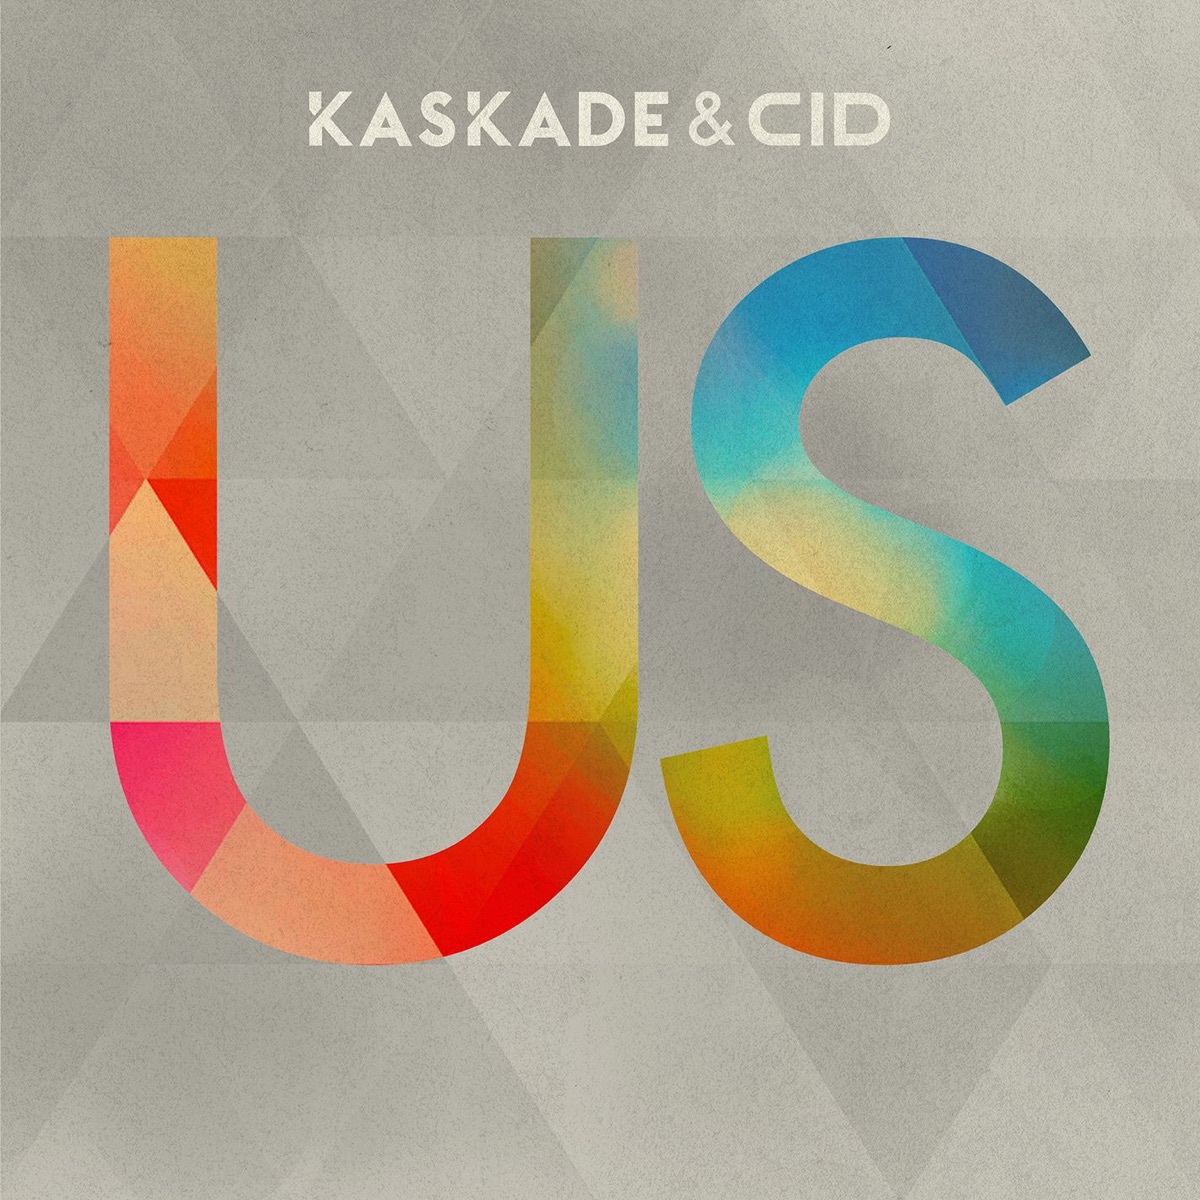 Sweet Memories - Single by CID & Kaskade on Apple Music